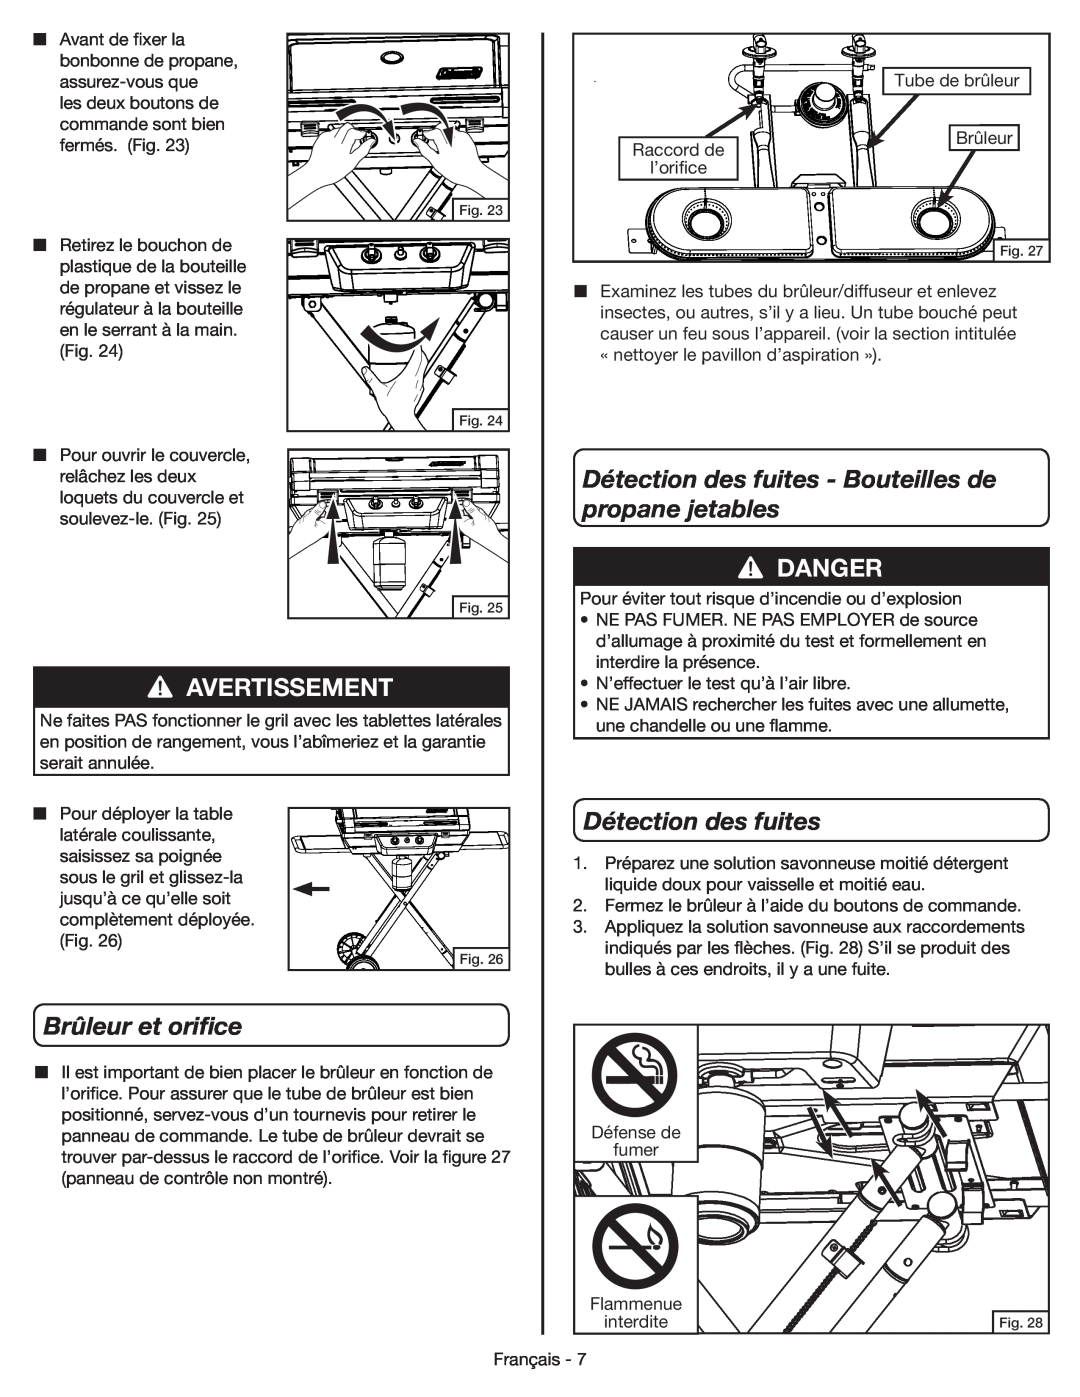 Coleman 9959 manual Détection des fuites - Bouteilles de, propane jetables, Brûleur et orifice, Danger, Avertissement 